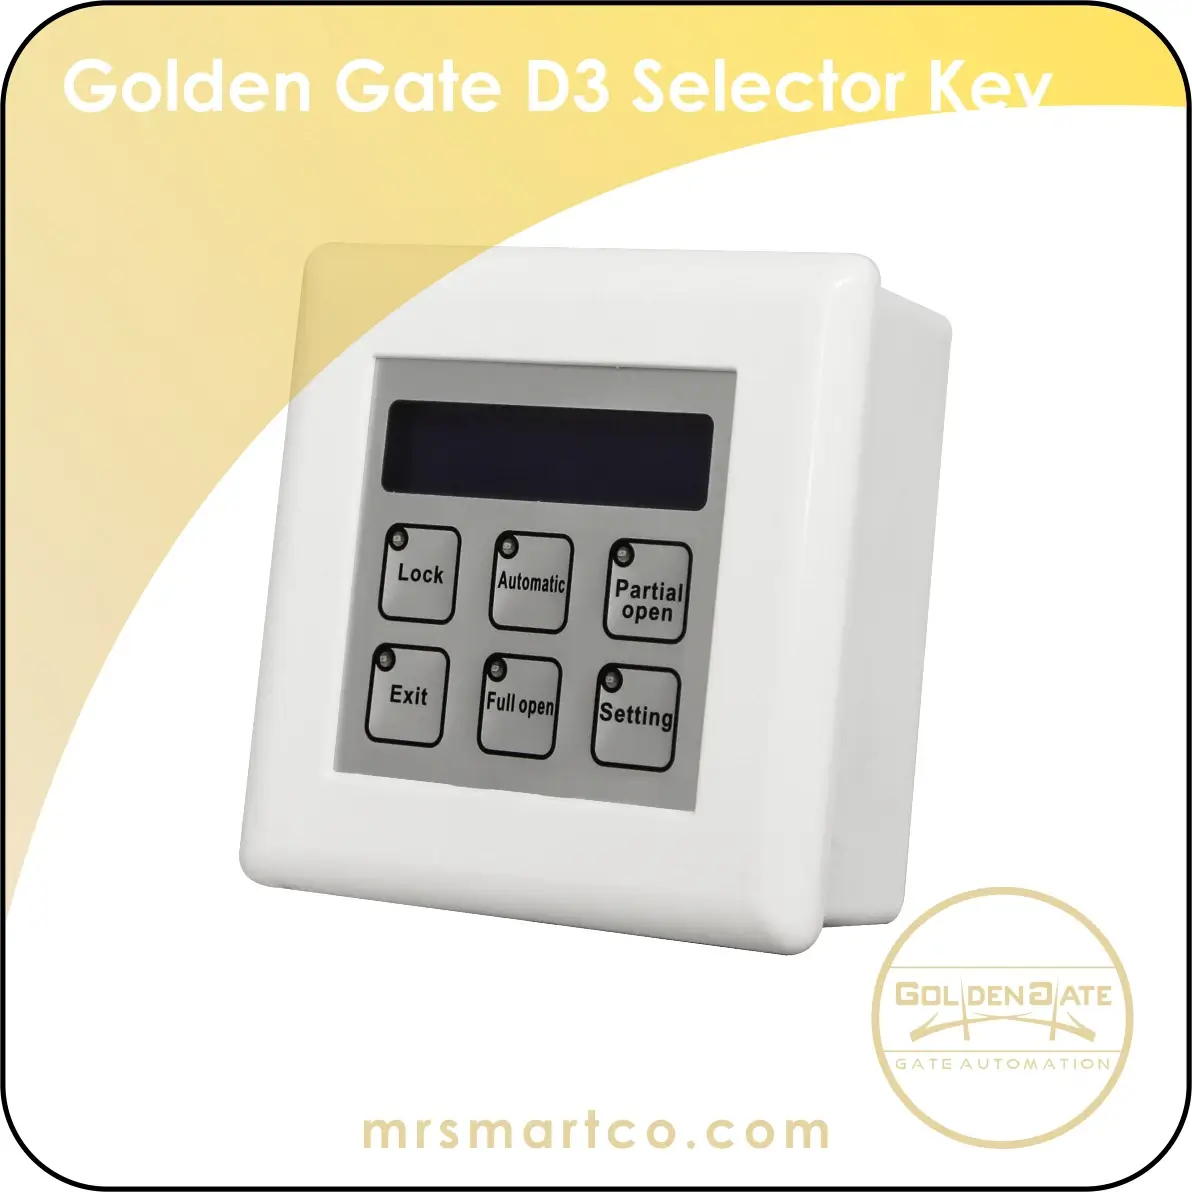 Golden Gate D3 Selector Key